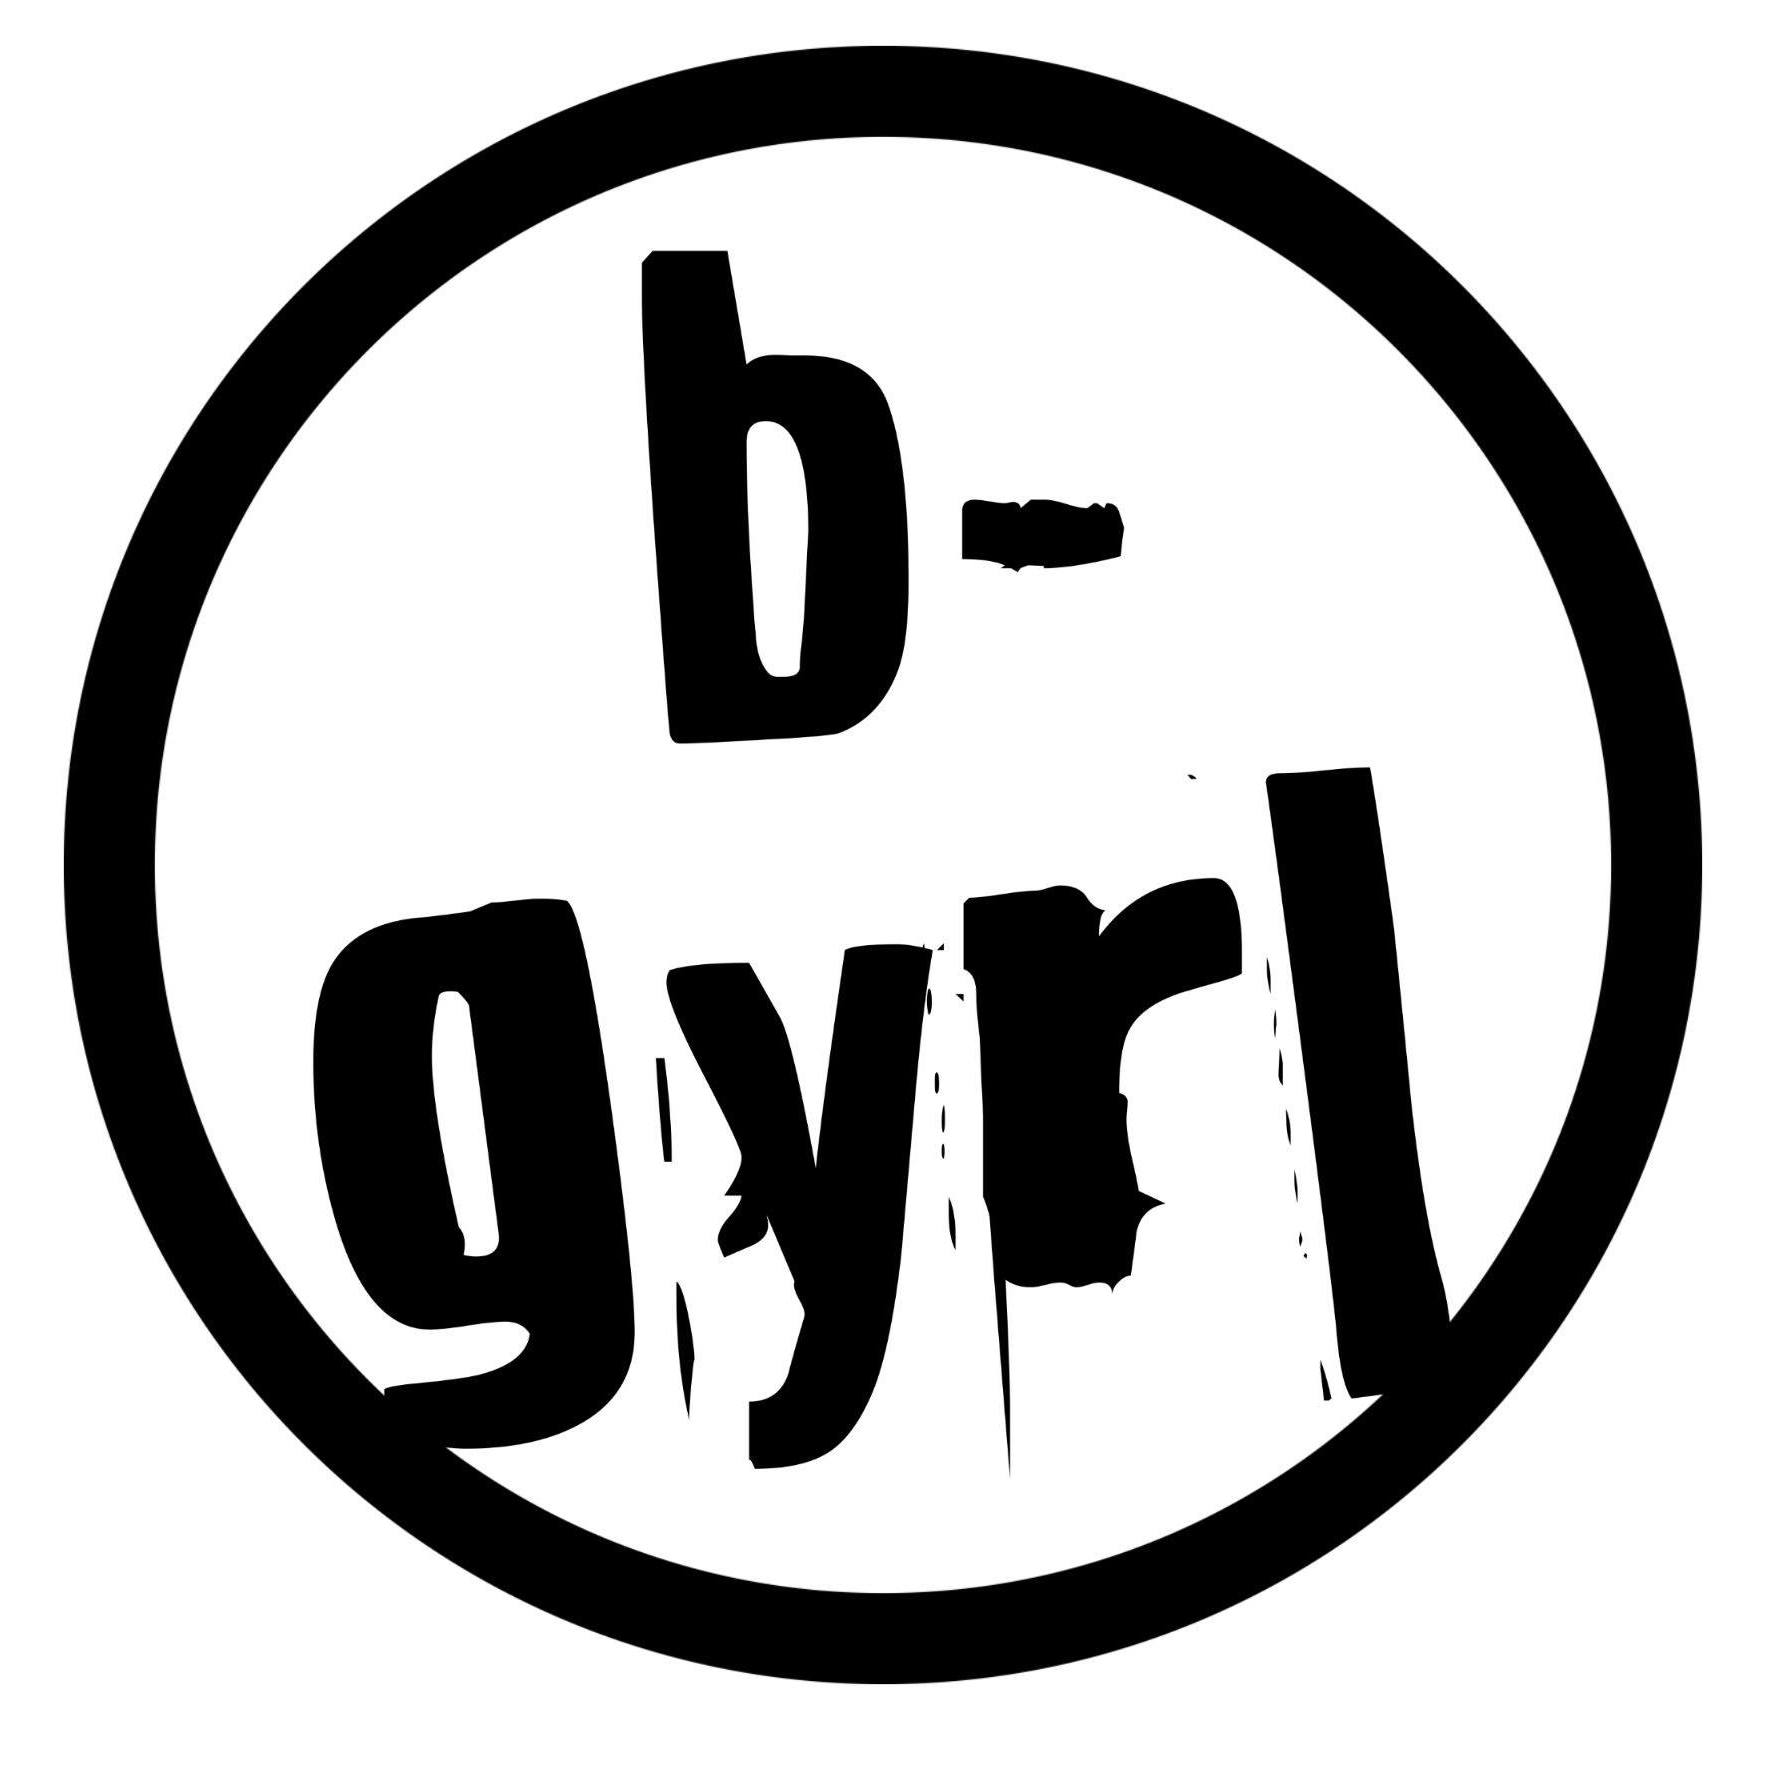 b-gyrl